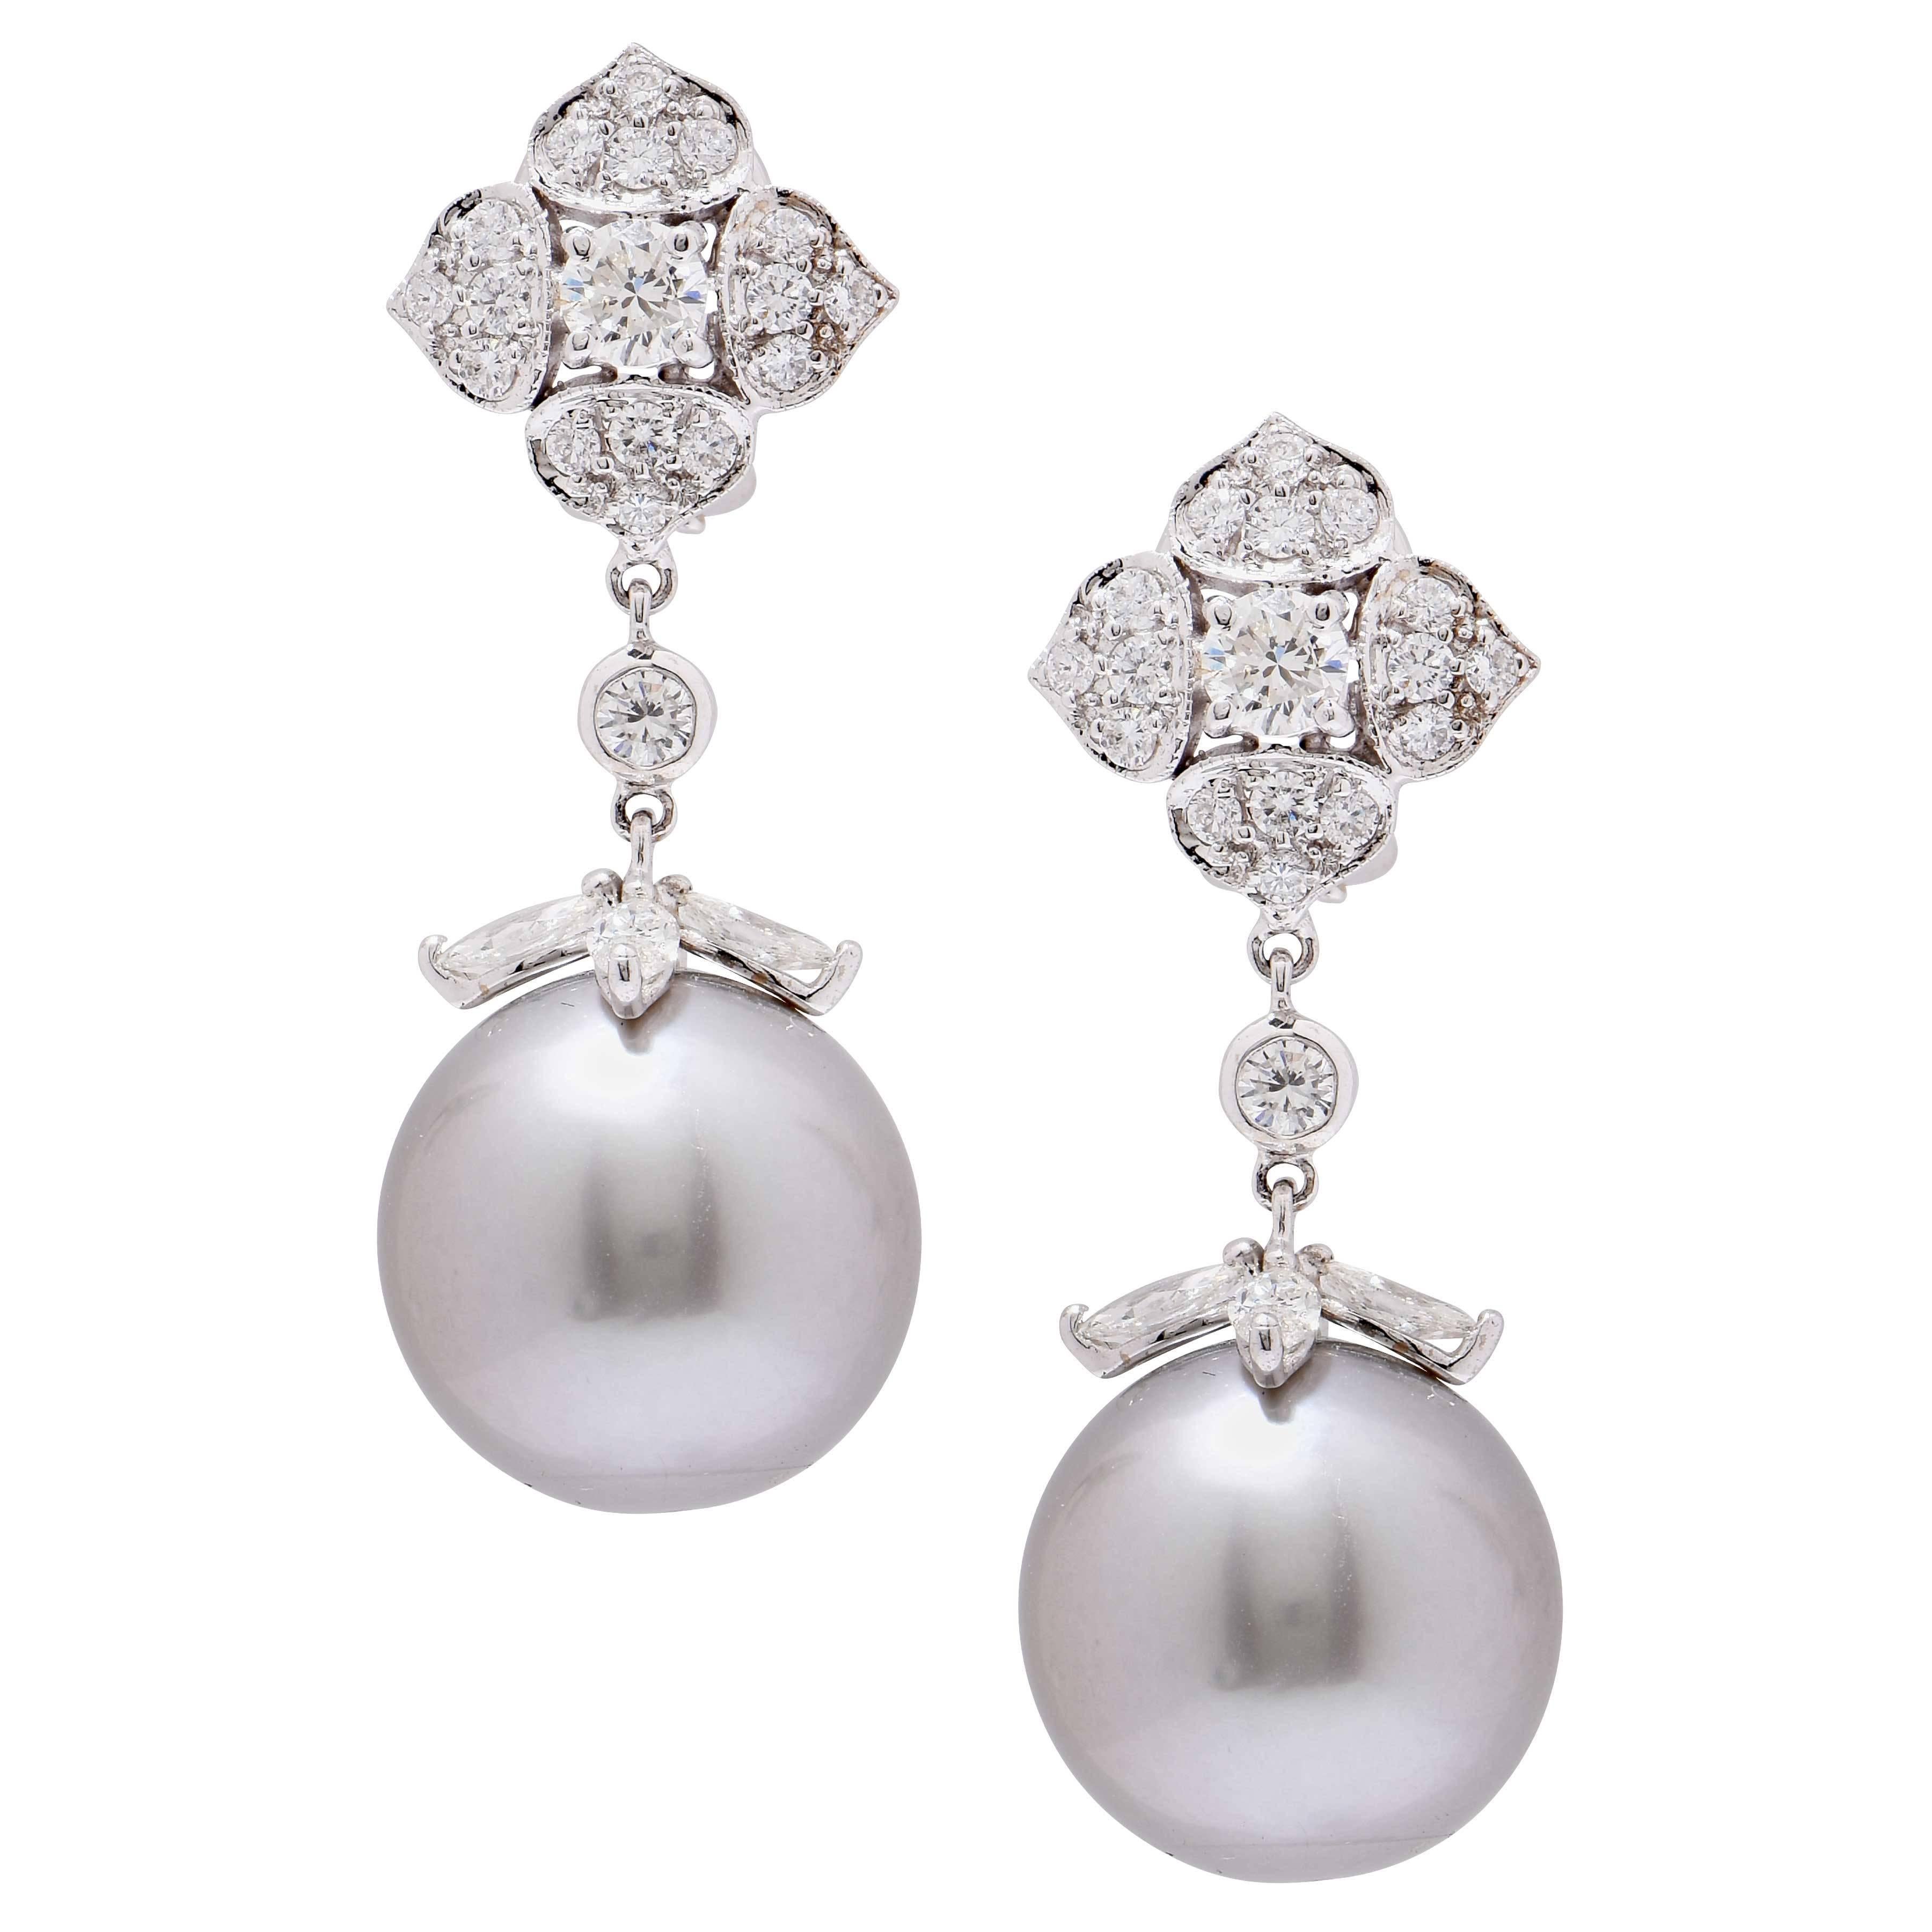 14.8 MM Boucles d'oreilles en perles de Tahiti grises et diamants avec des gouttes de perles de semence détachables, serties dans de l'or blanc 18 carats. Cette magnifique paire de boucles d'oreilles comprend 110 diamants ronds d'un poids total